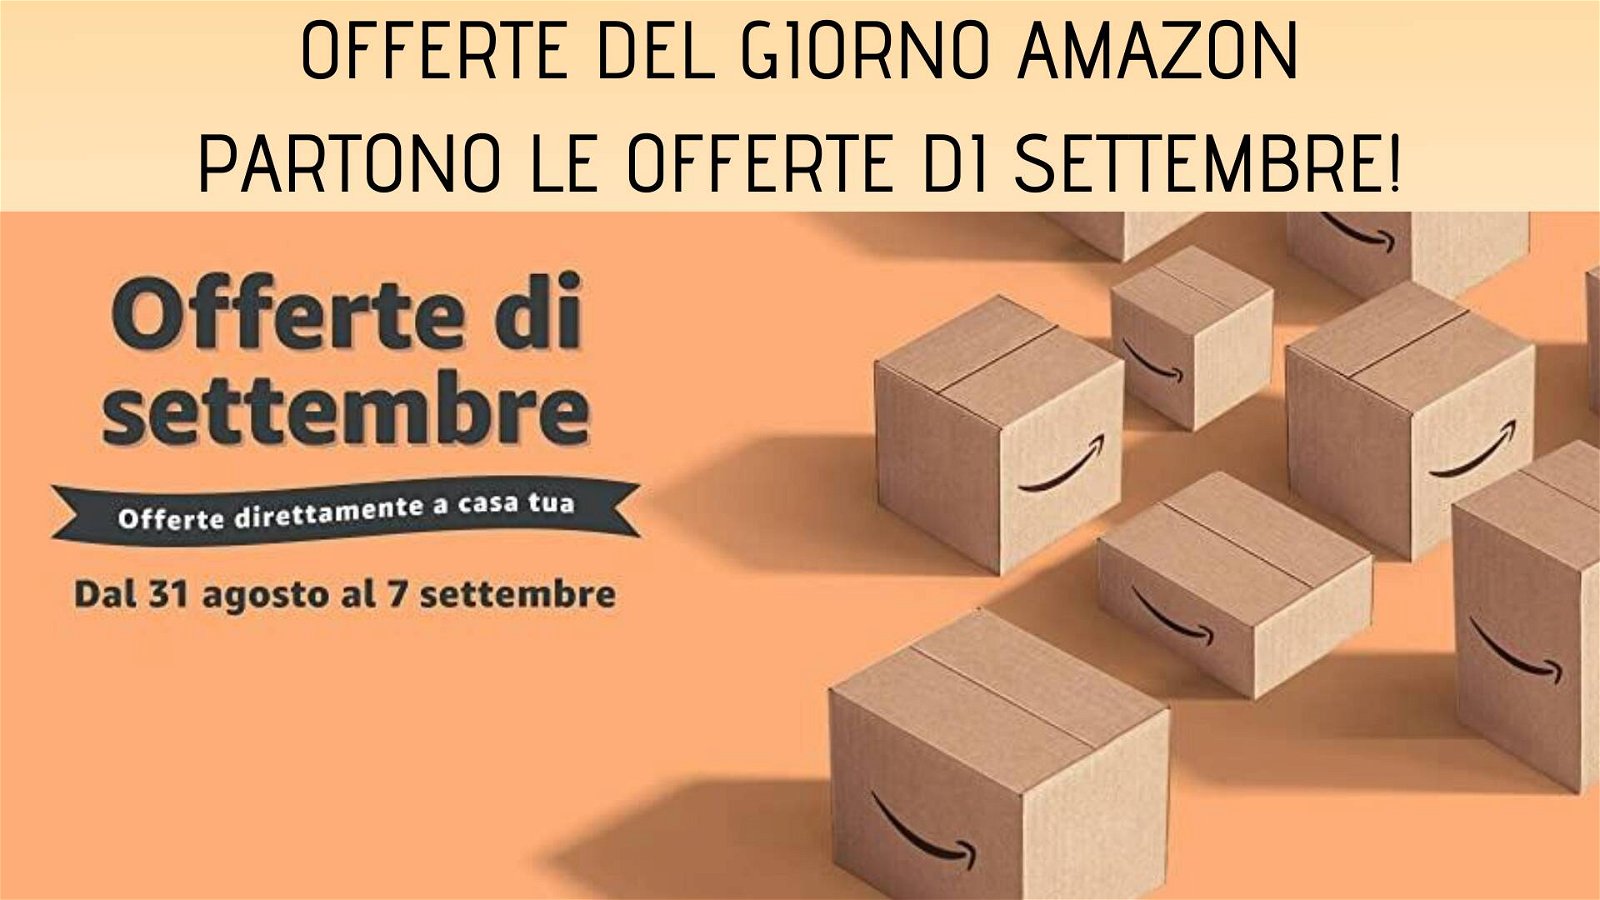 Immagine di Offerte del giorno Amazon: partono le offerte di settembre!